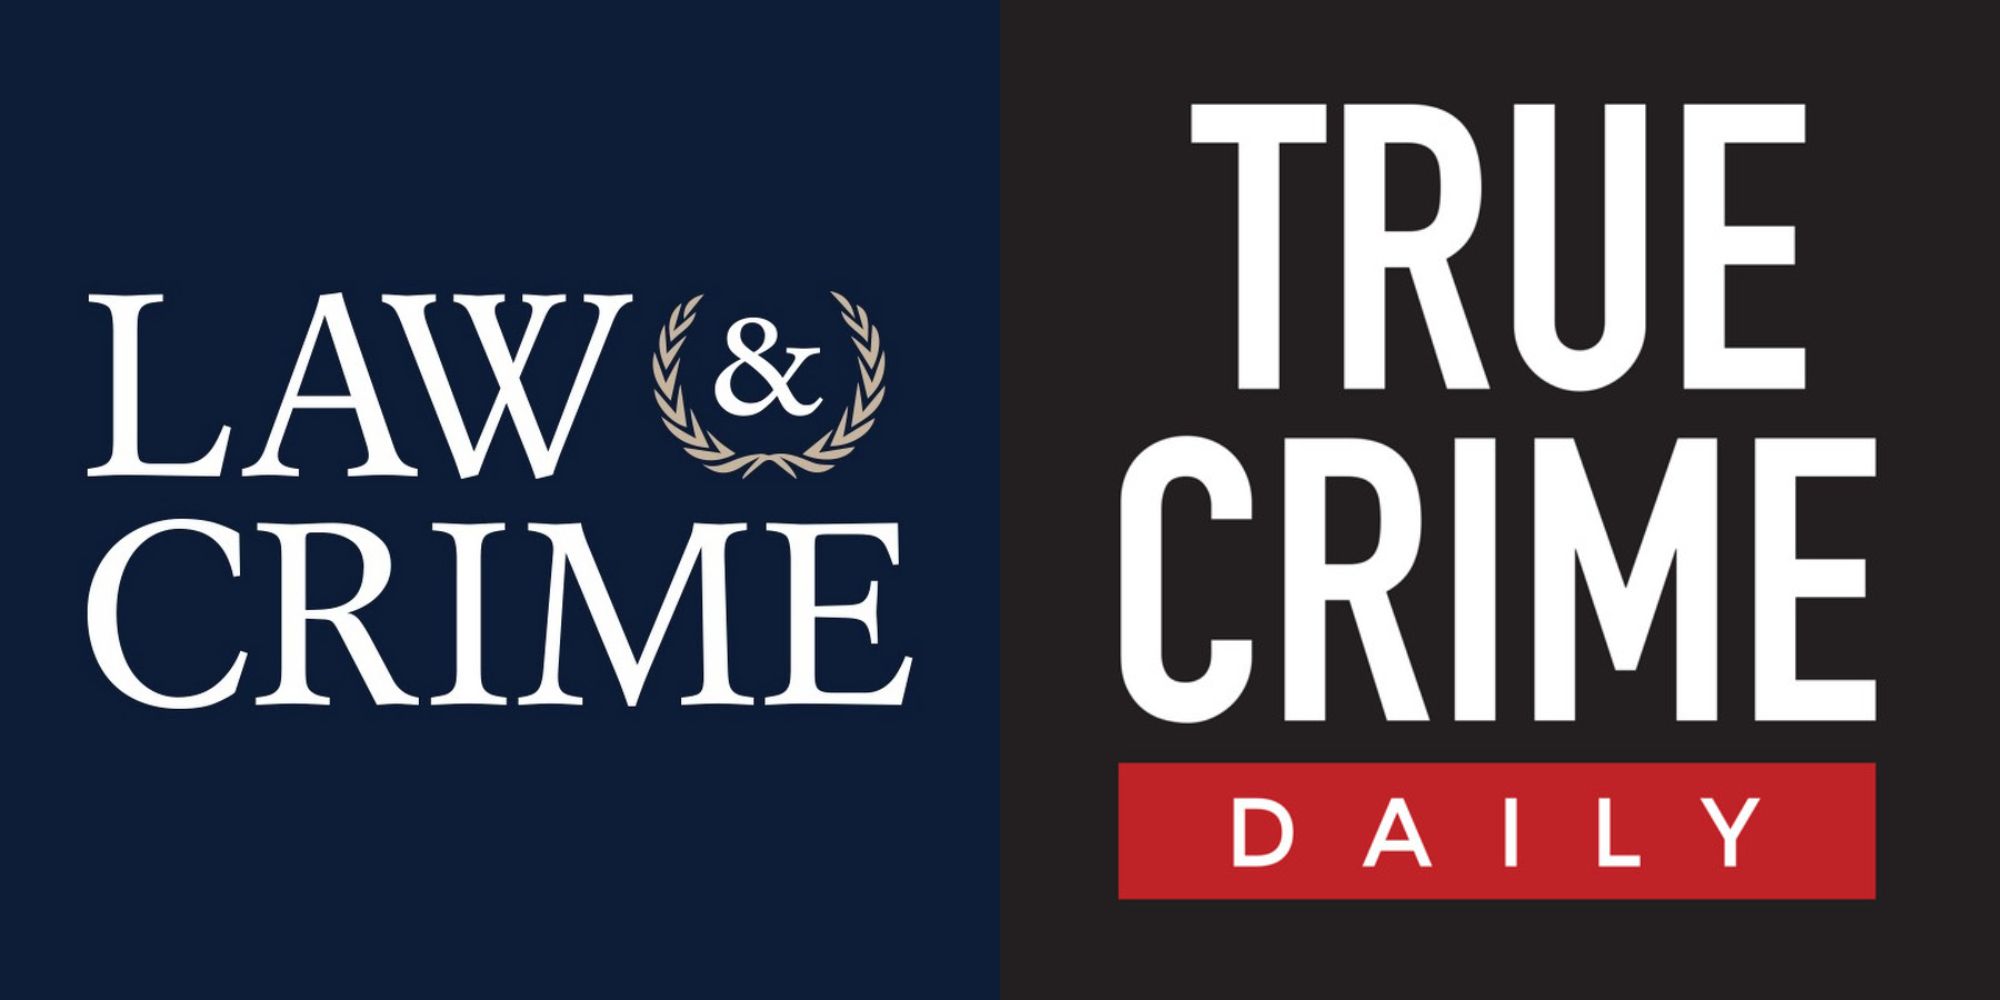 Imagem dividida mostrando os logotipos dos canais diários do YouTube Law & Crime e True Crime